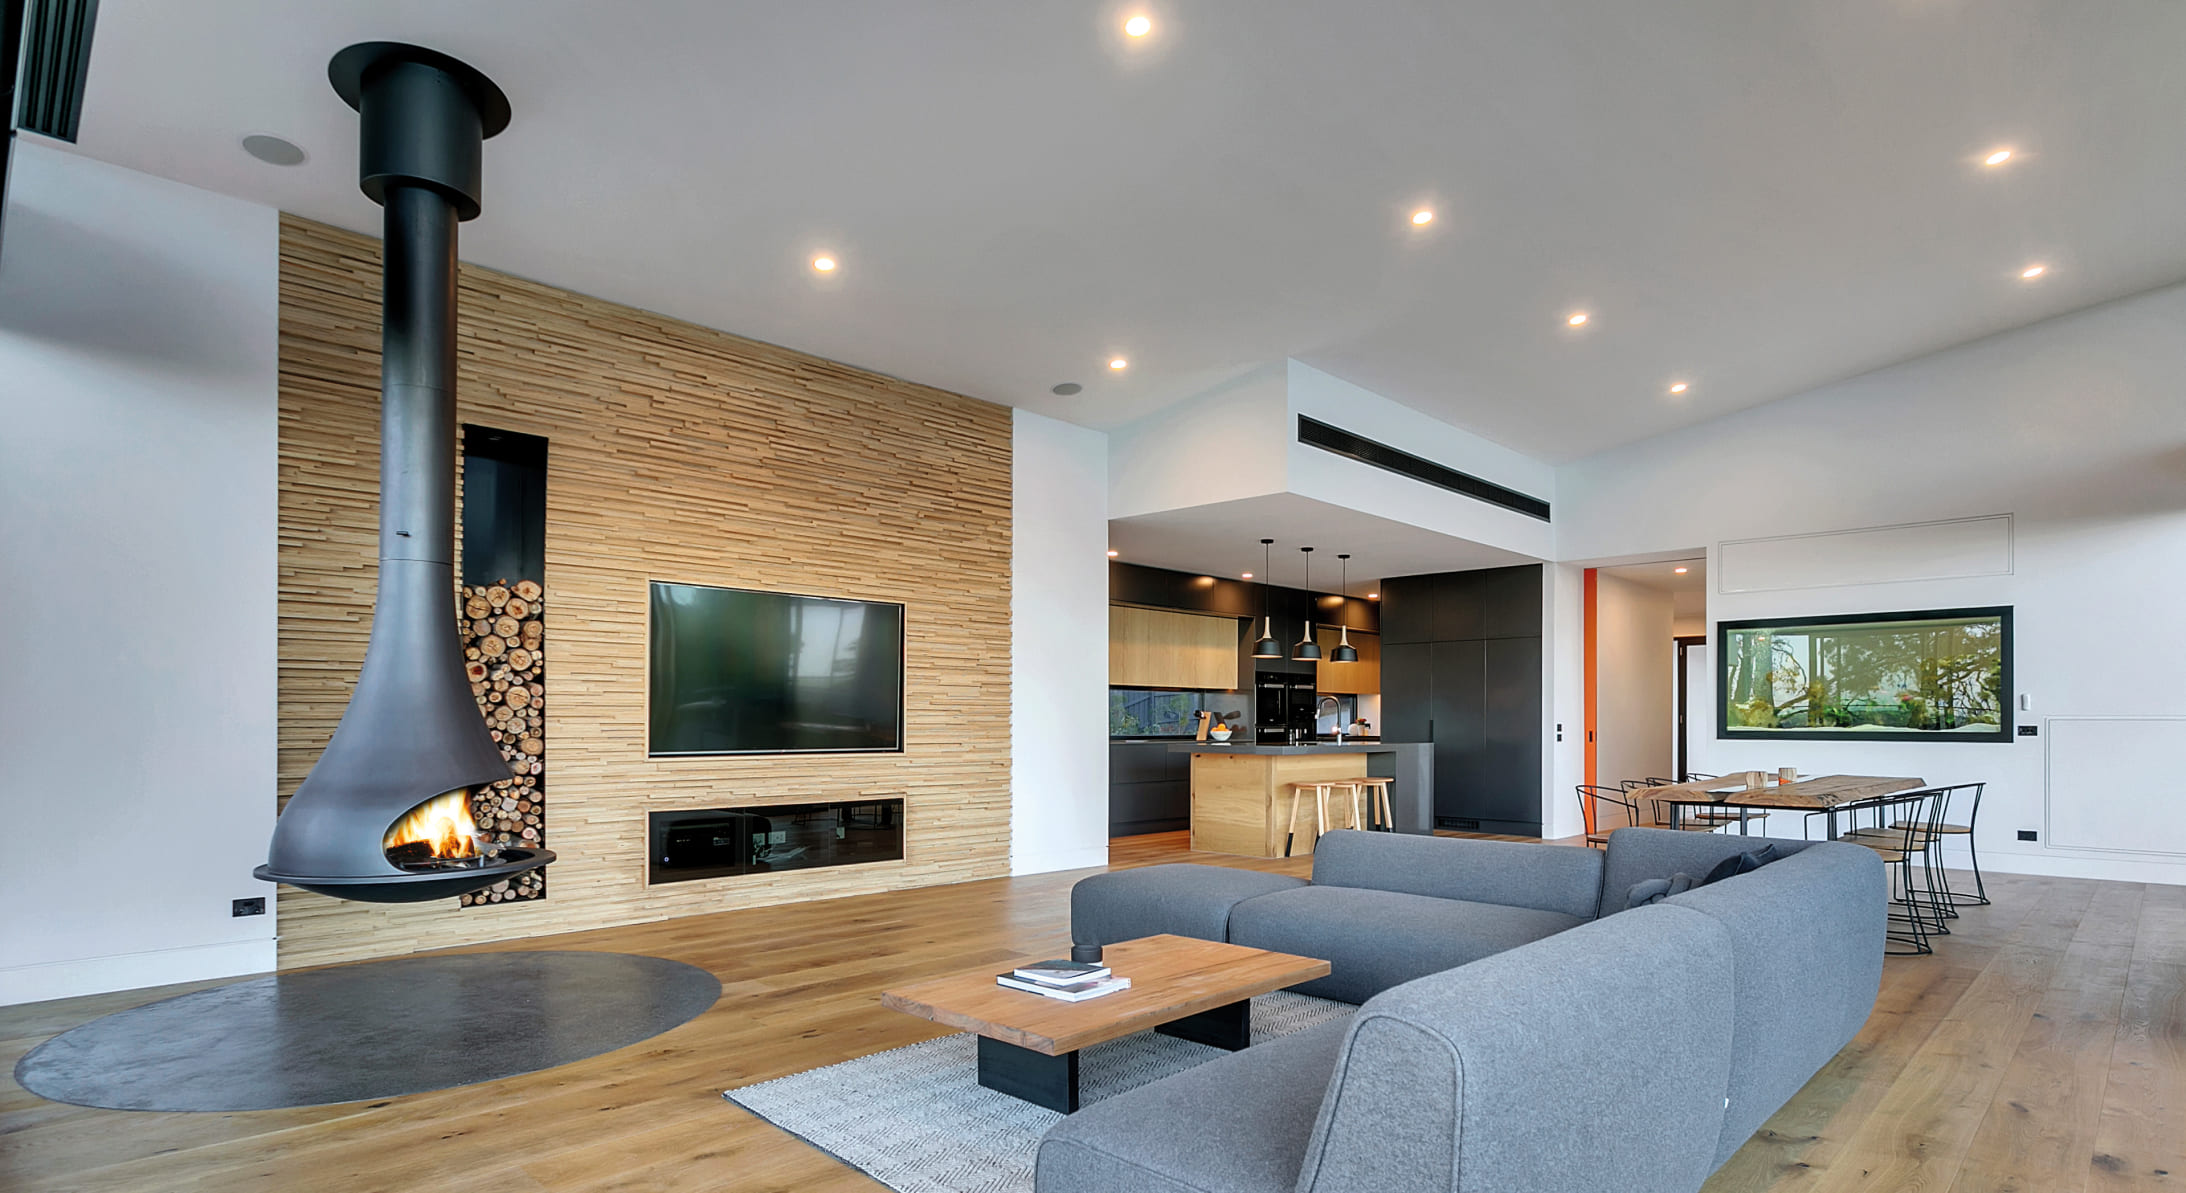 Gemütliches helles Wohnzimmer mit modernem Designkamin von JC Bordelet © JC Bordelet